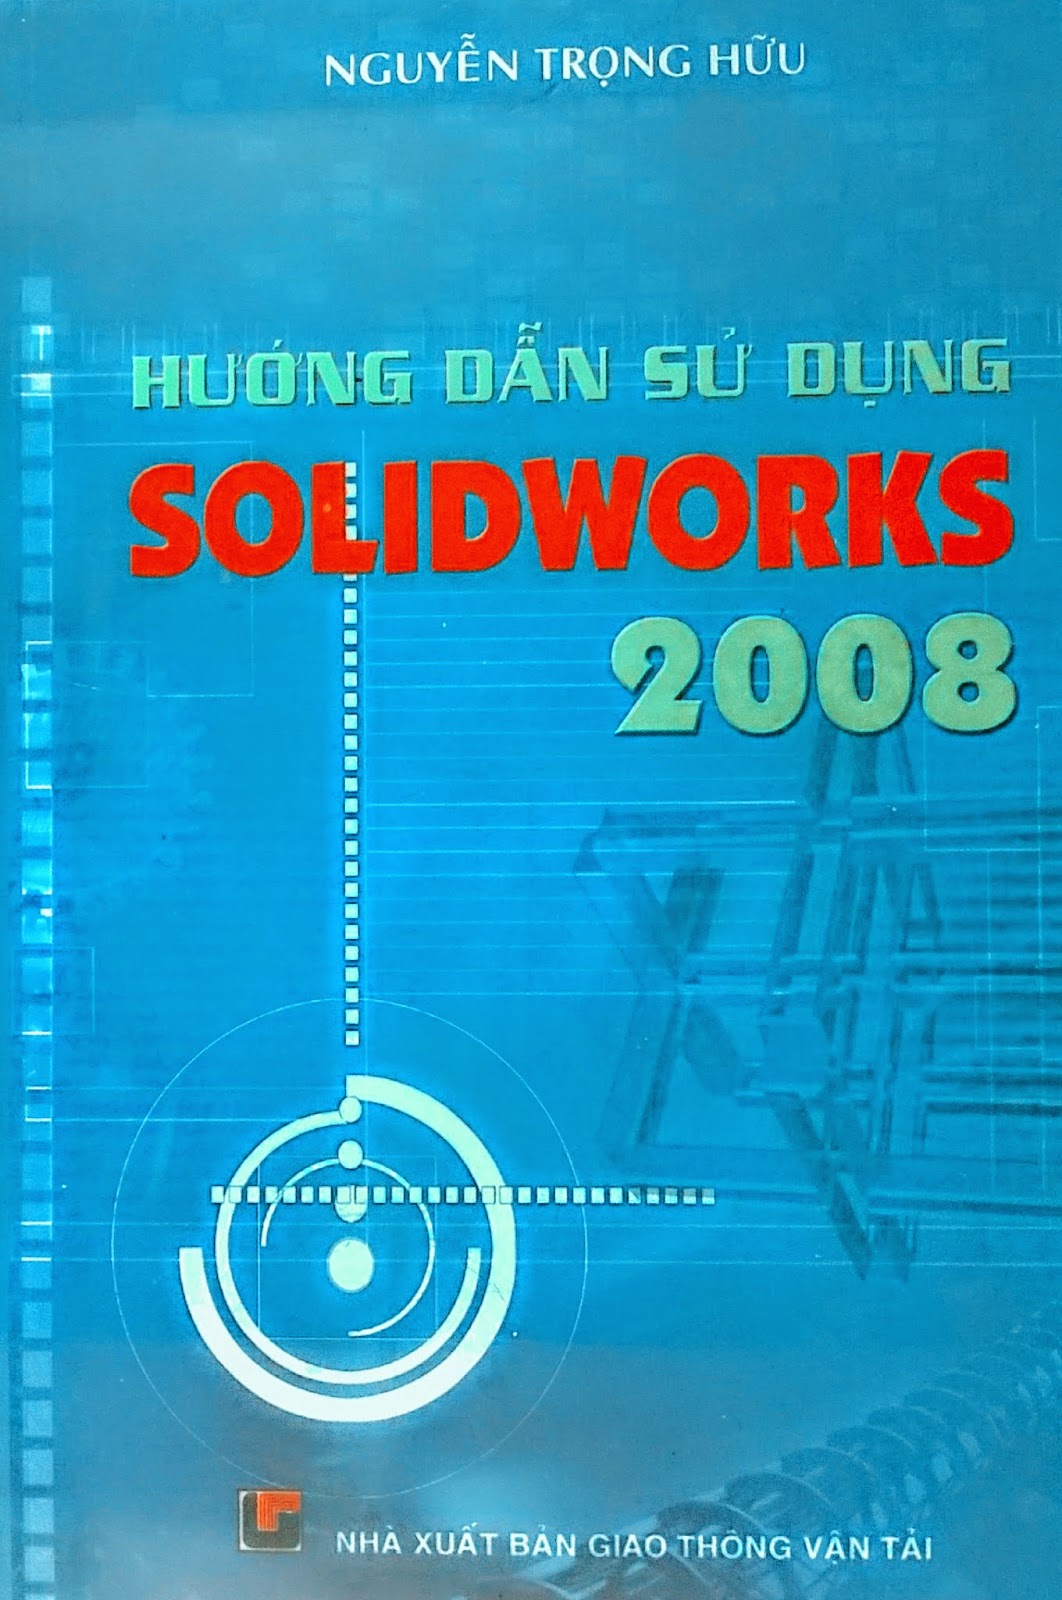  hướng dẫn sử dụng solidworks, solidworks, sách hướng dẫn sử dụng phần mềm solidworks, sách kỹ thuật, thư viện sách gmek, gmek, sách cơ khí, cơ khí gmek